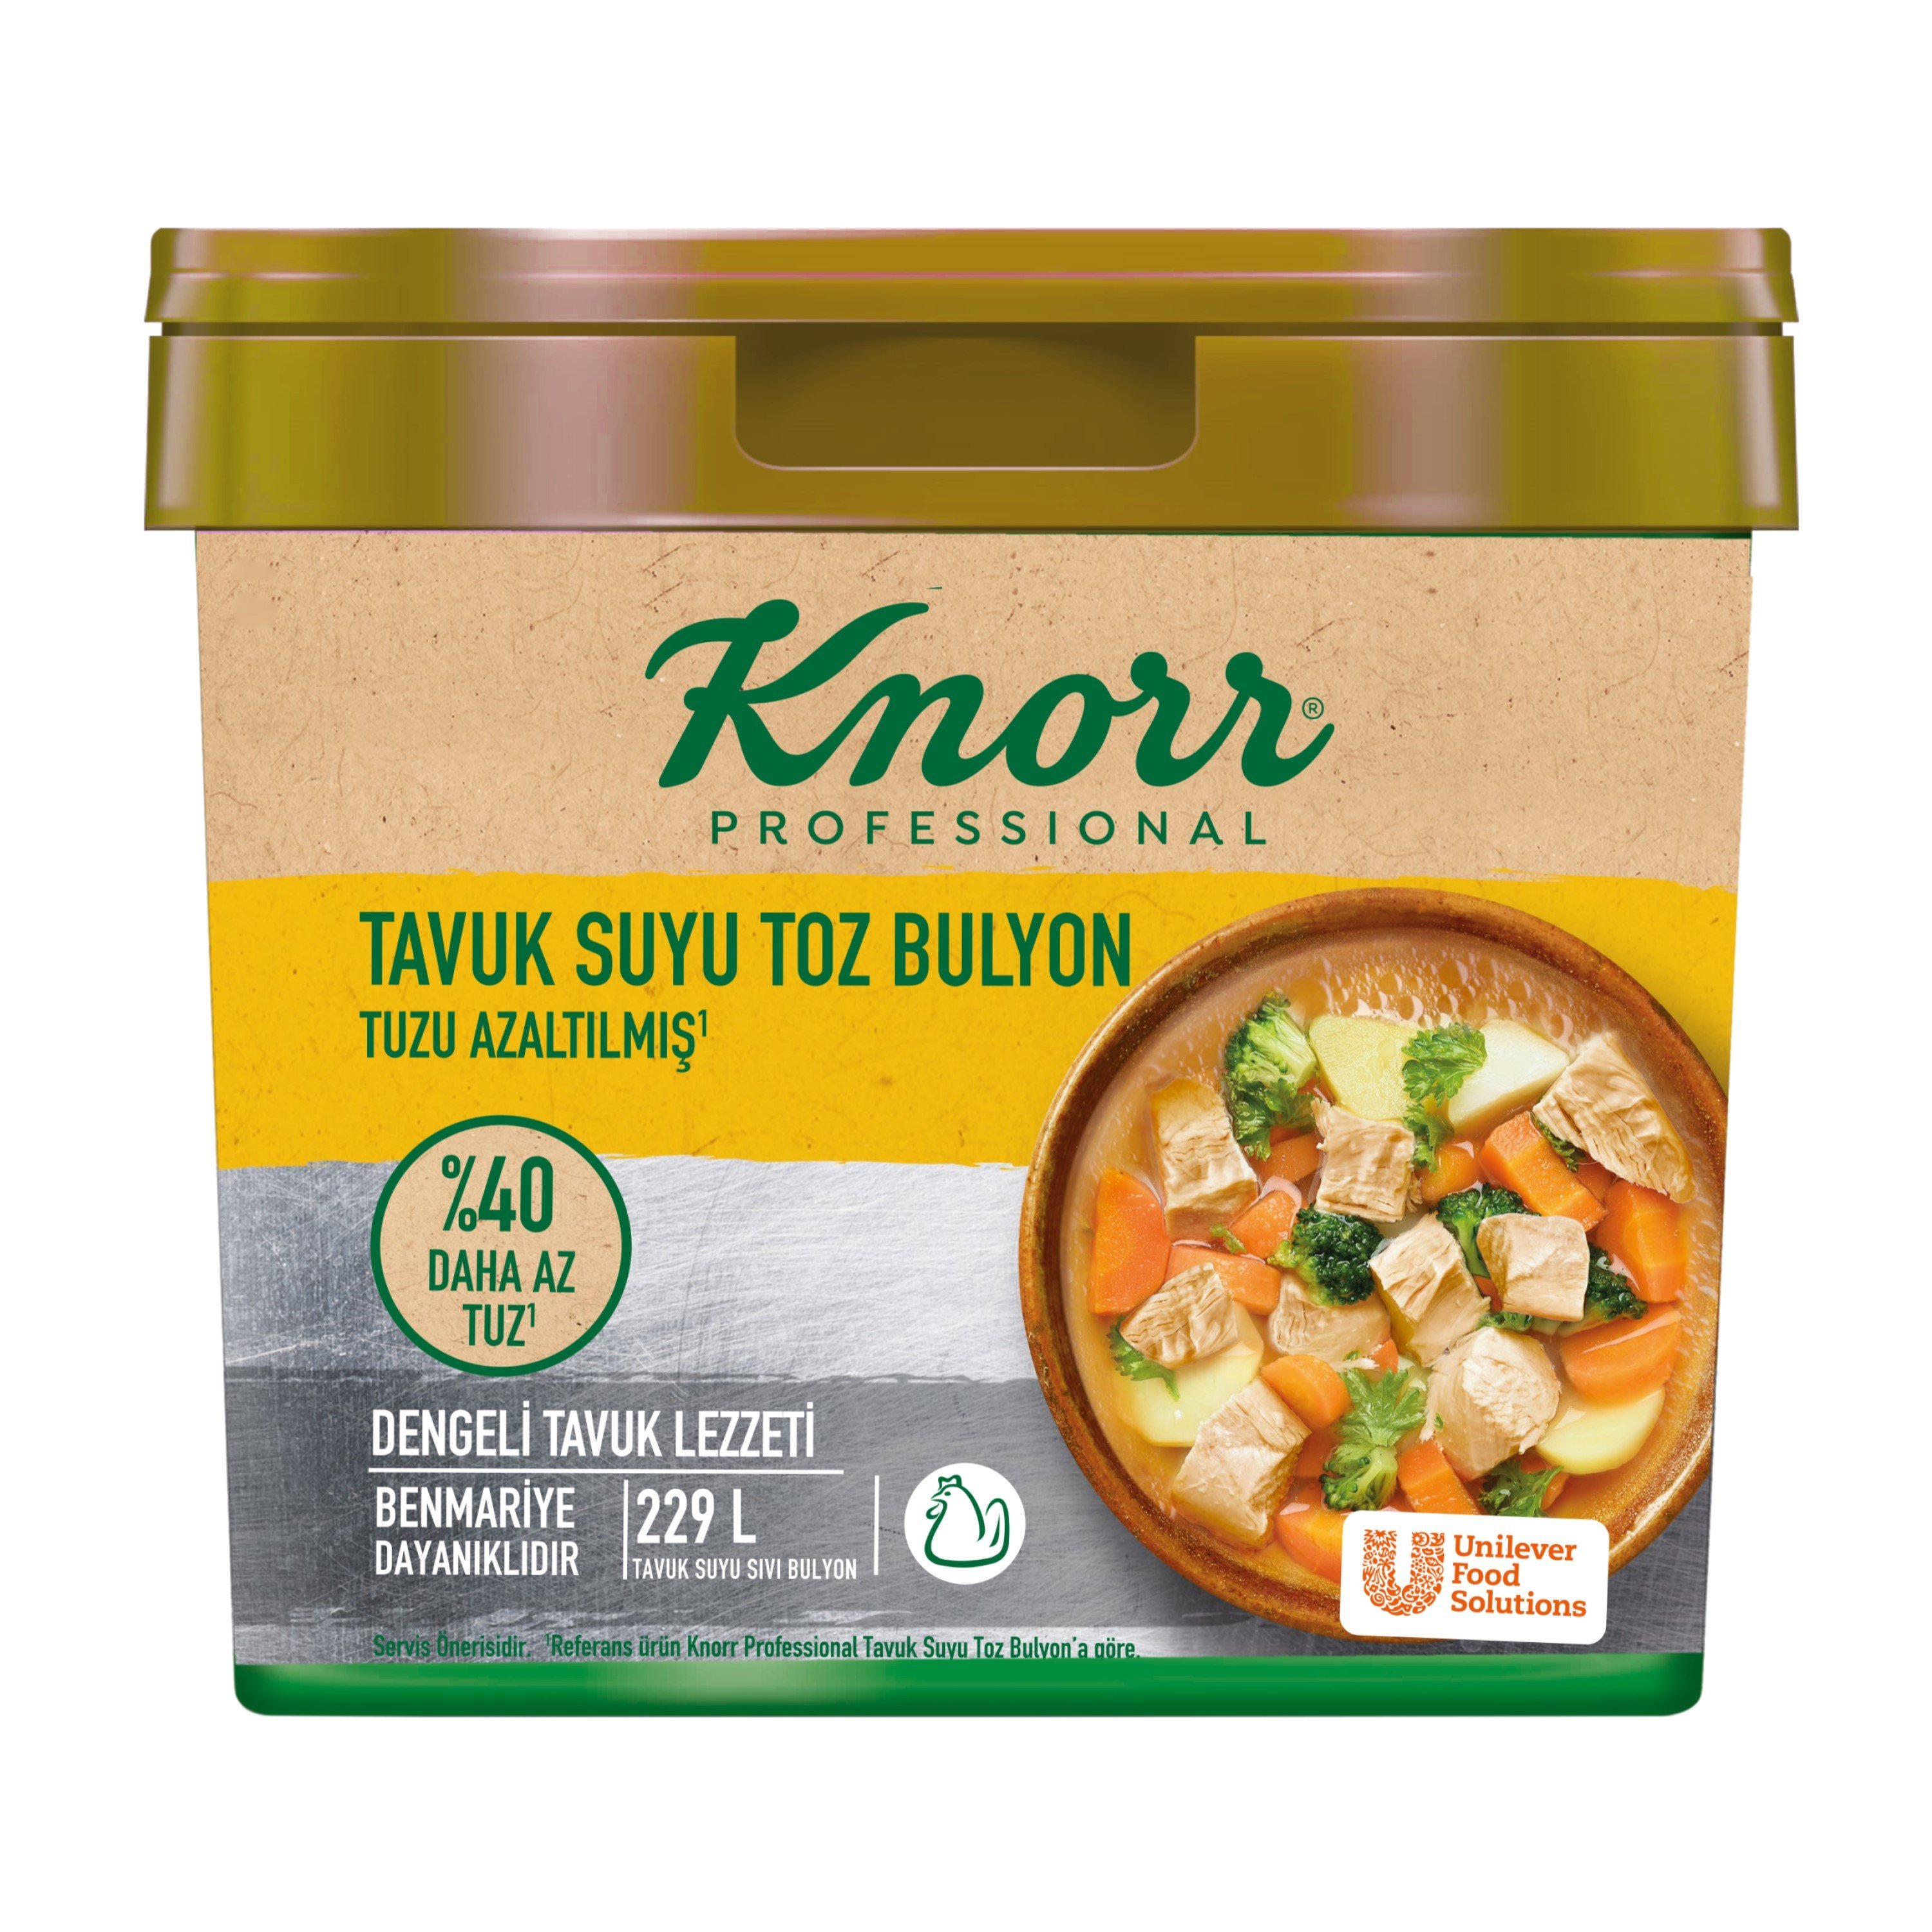 Knorr Tuzu Azaltılmış Tavuk Bulyon 4 kg - 